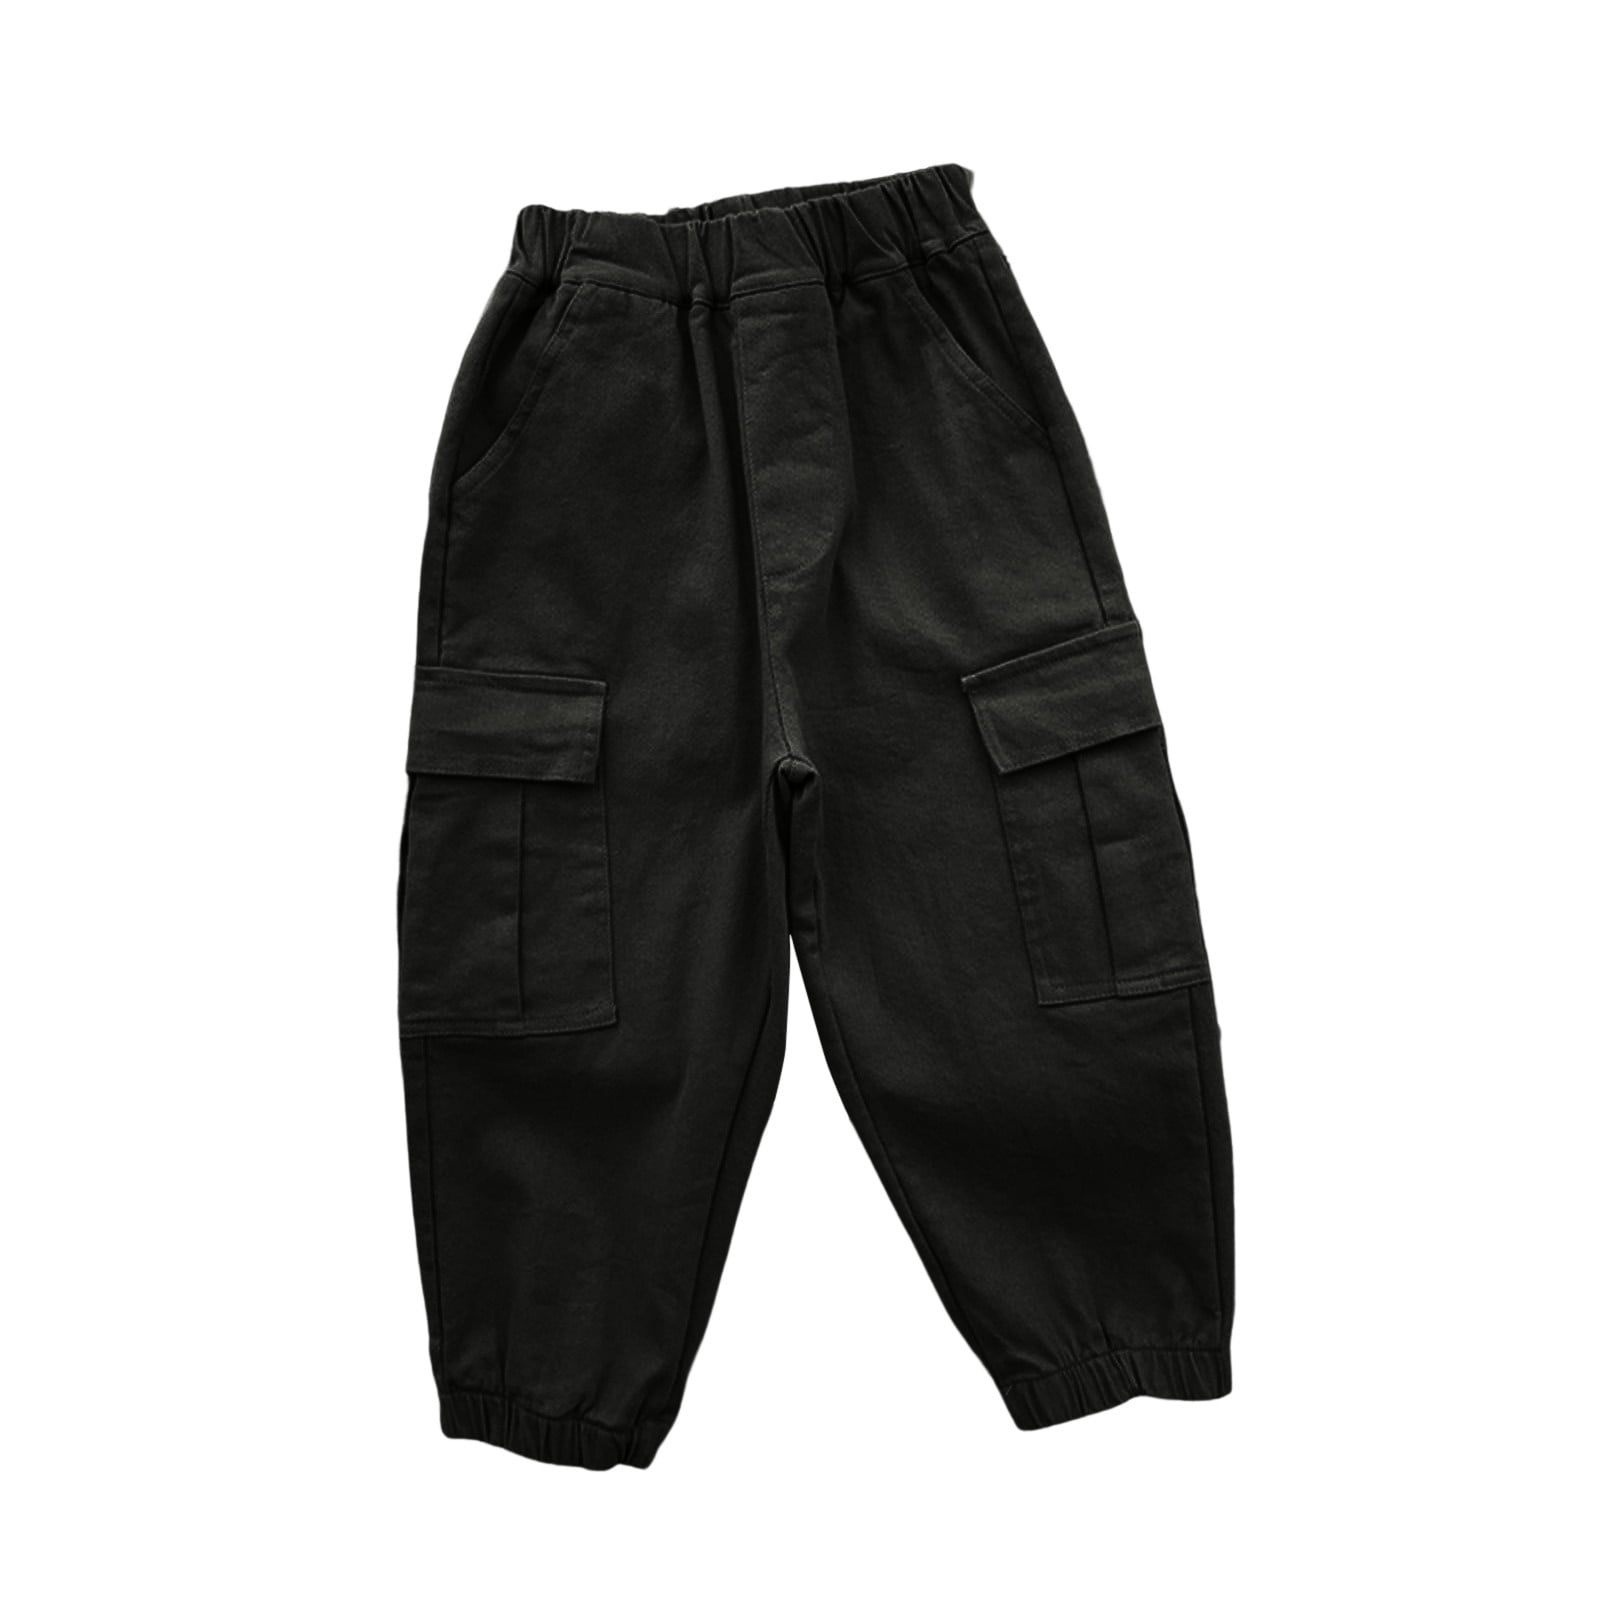 Buy Ezee Sleeves Boys/Kids Slim Fit Casual Lycra Pants/Trousers - Pack of 2  (Black,Baby Pink) at